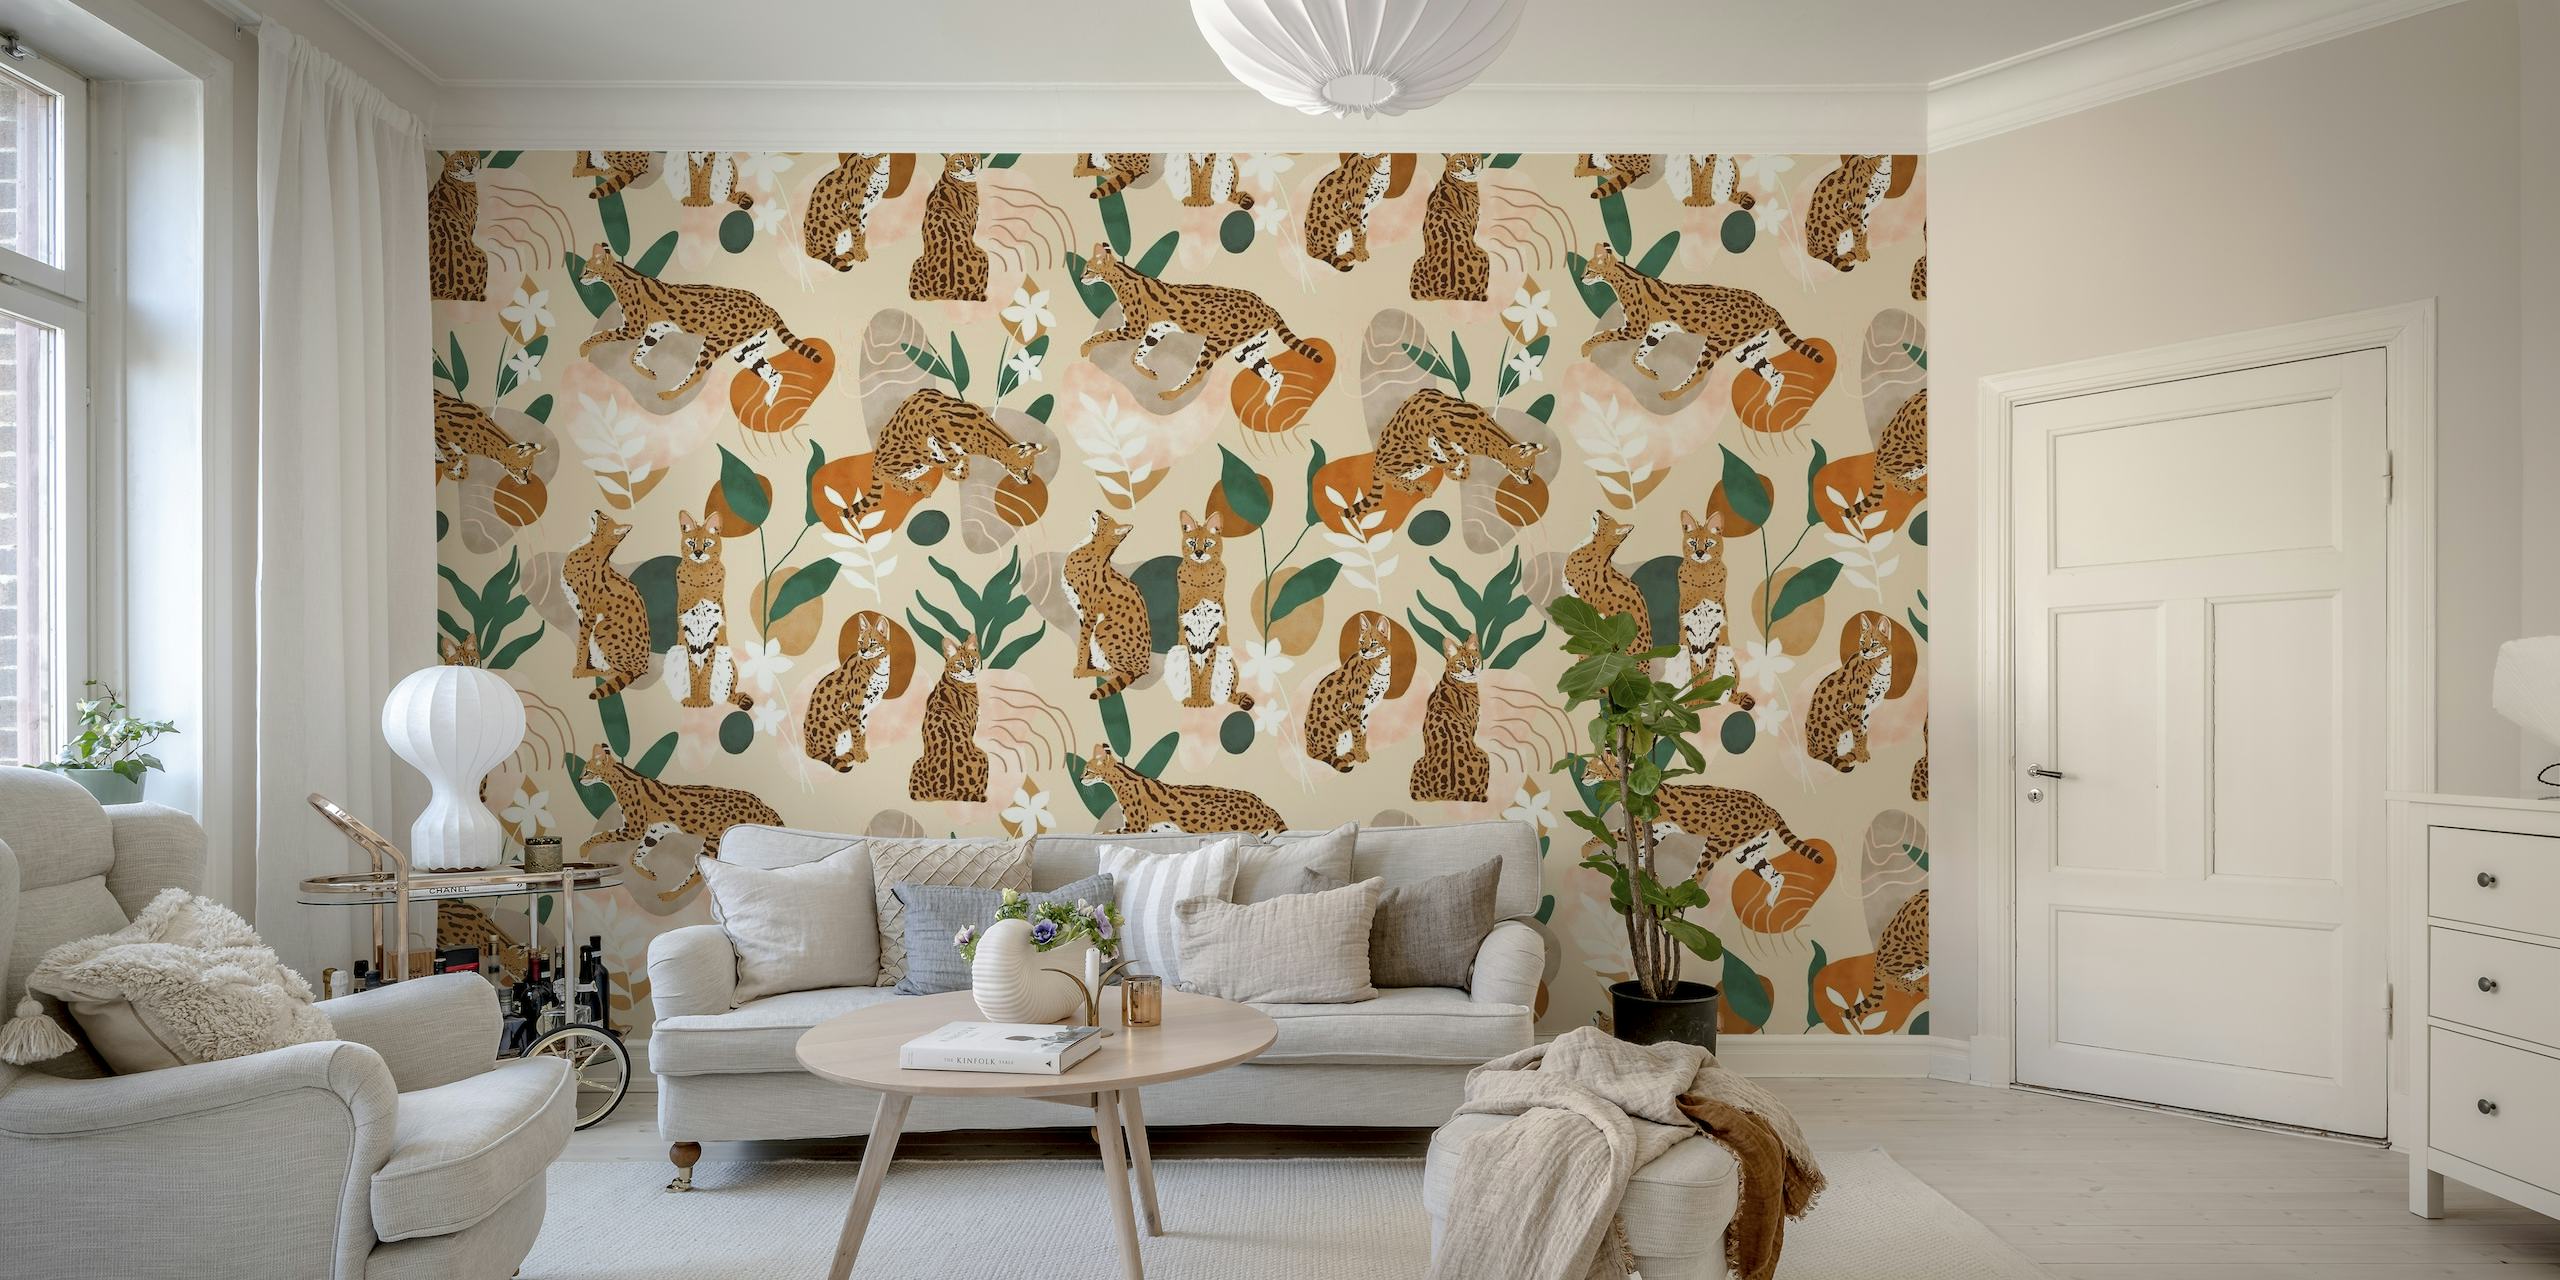 Serval katt abstrakt natur tapet med stiliserade kattdjur och växtmotiv på en neutral bakgrund.